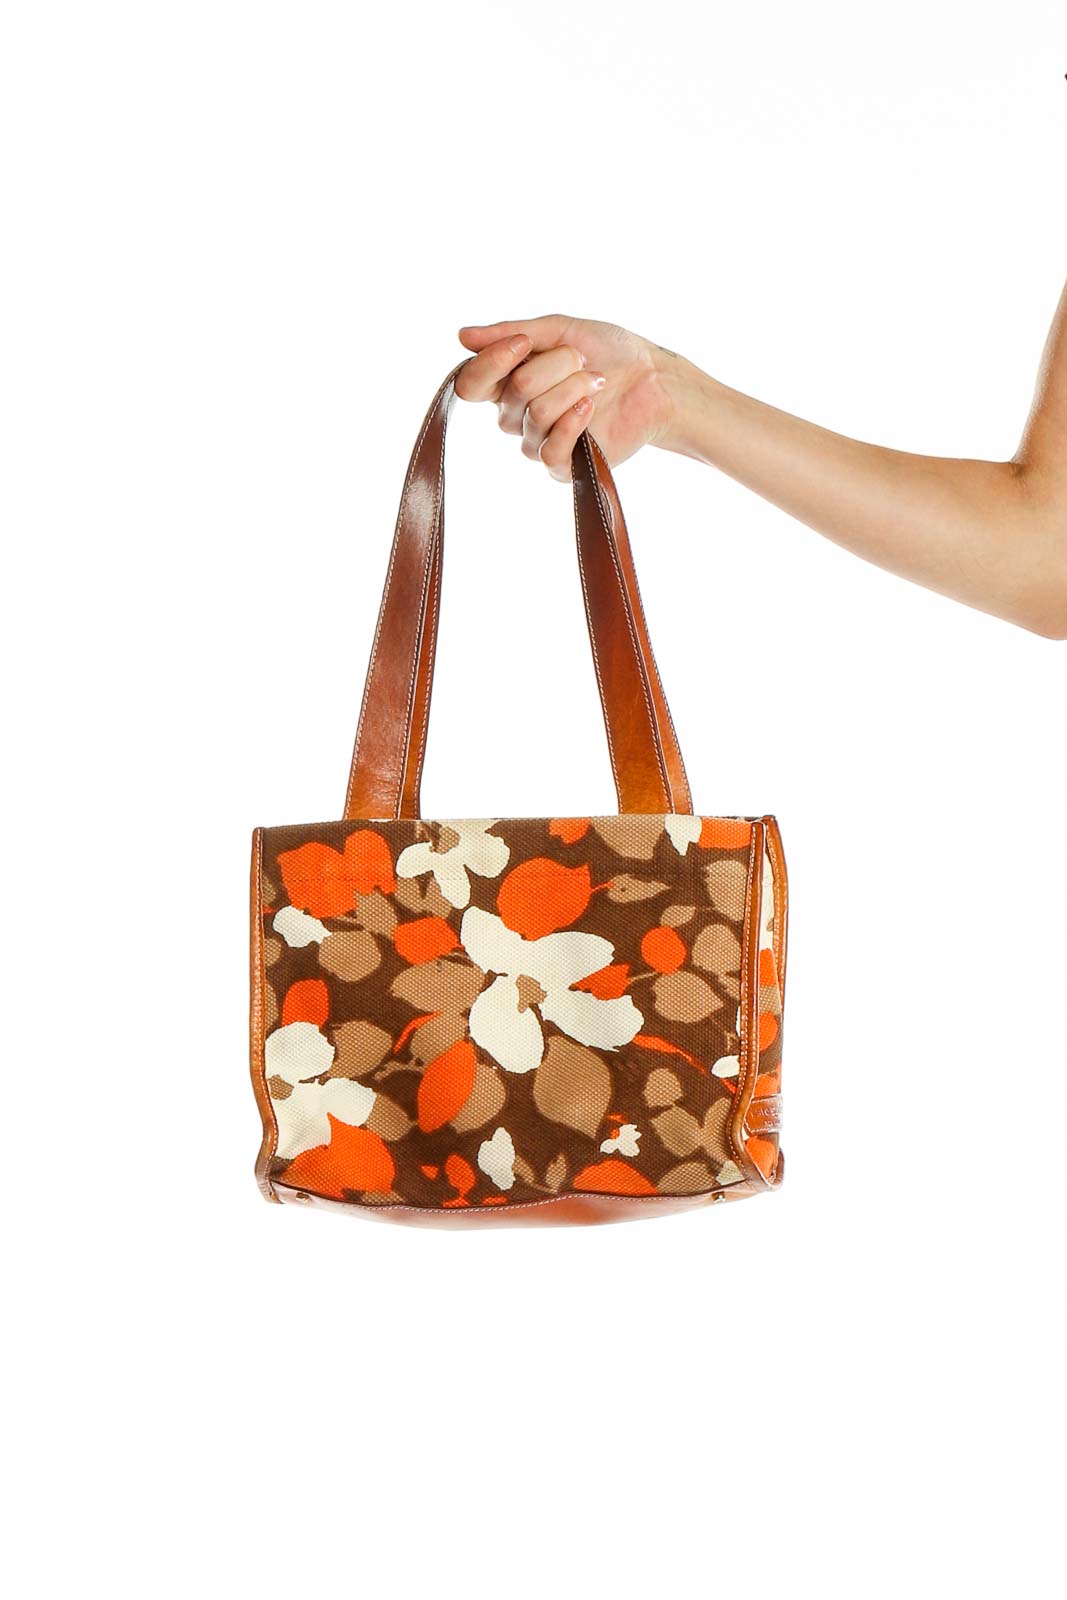 Brown Orange Floral Print Bag Front